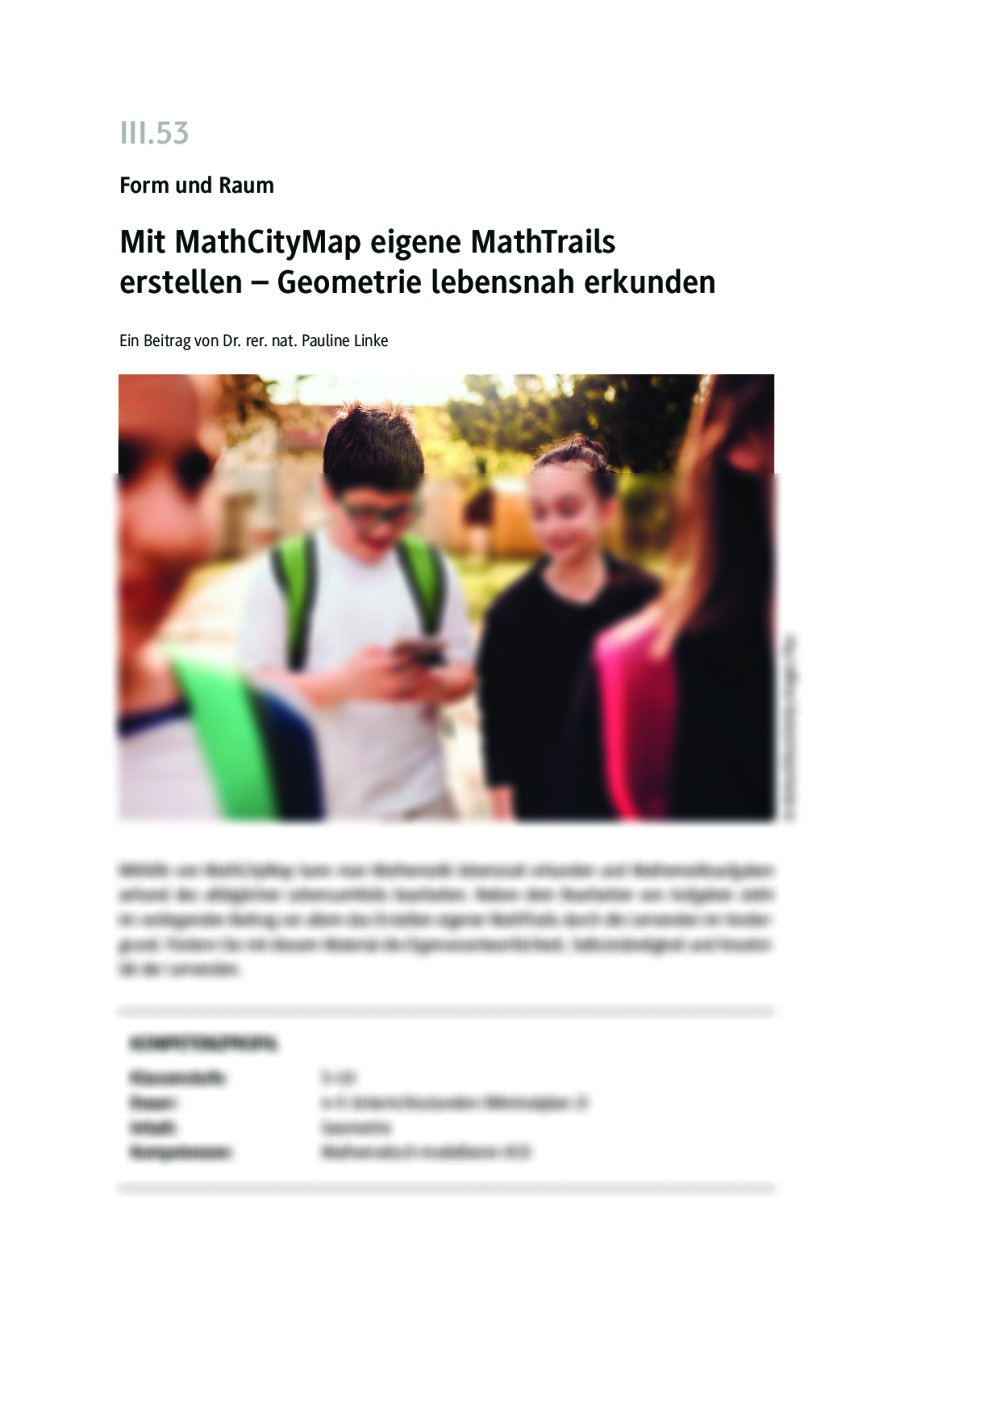 Mit MathCityMap eigene MathTrails erstellen - Seite 1